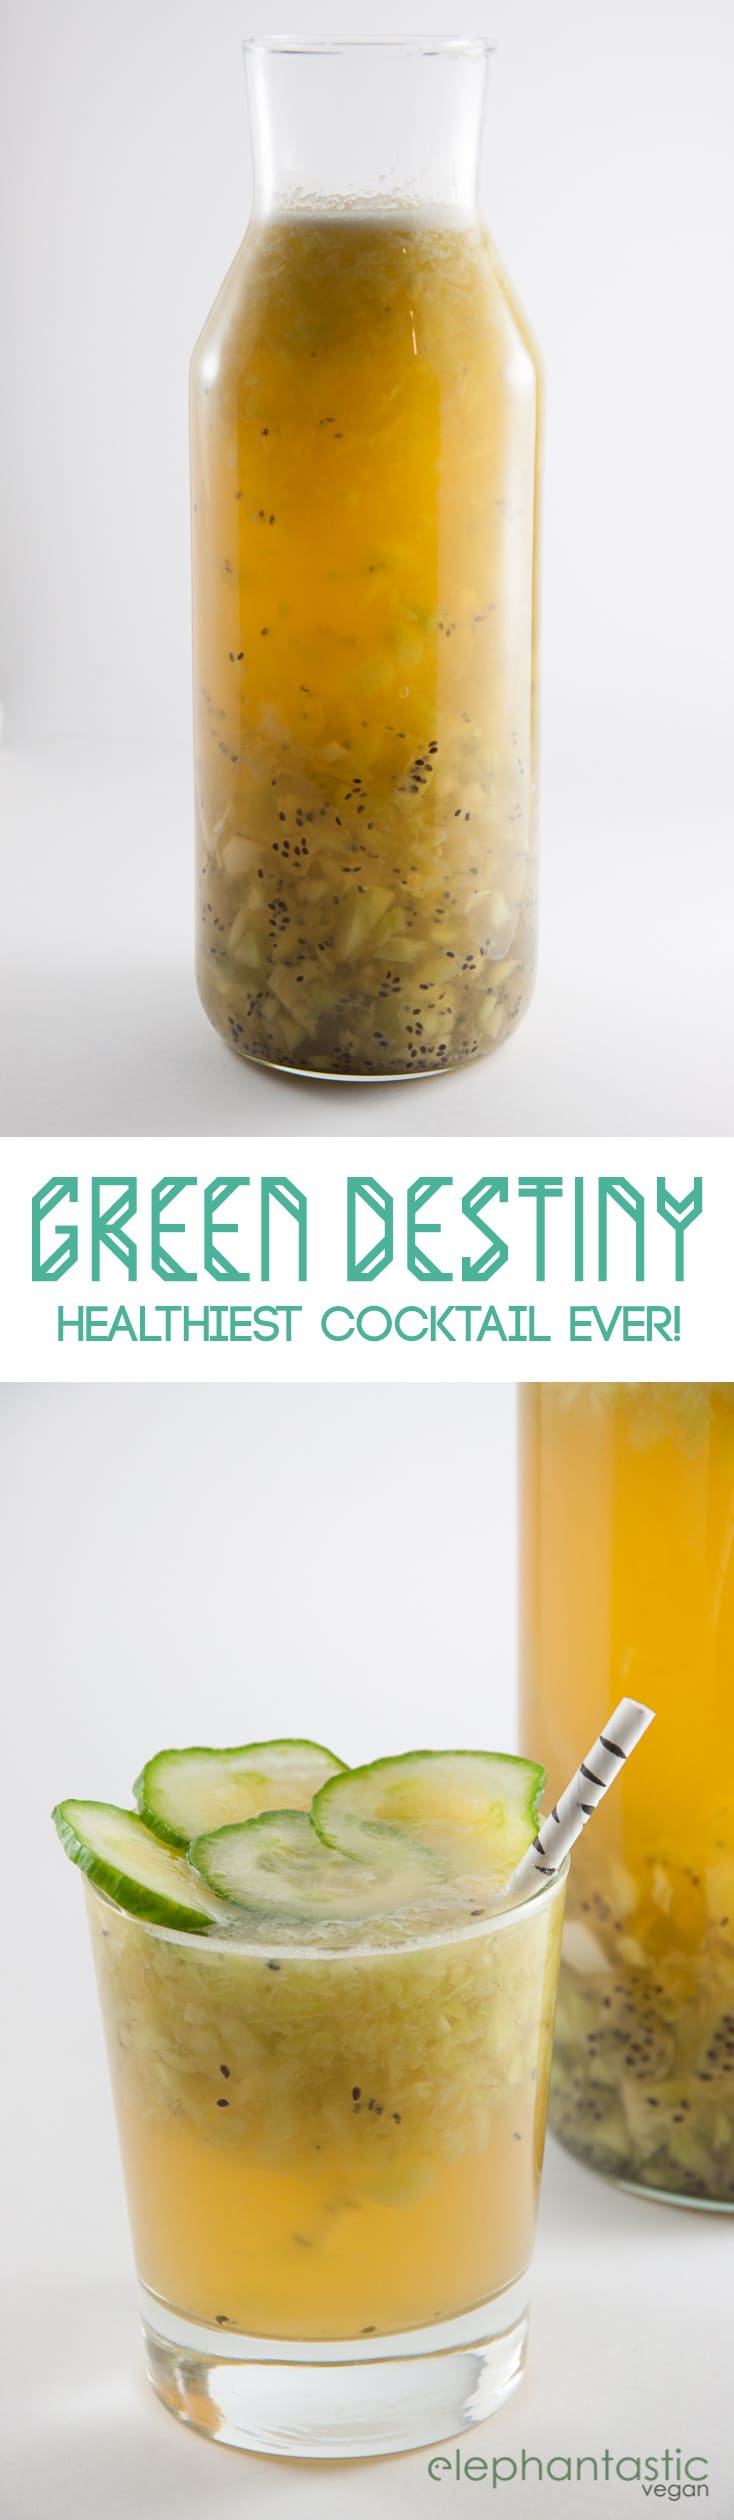 Green Destiny Cocktail | ElephantasticVegan.com